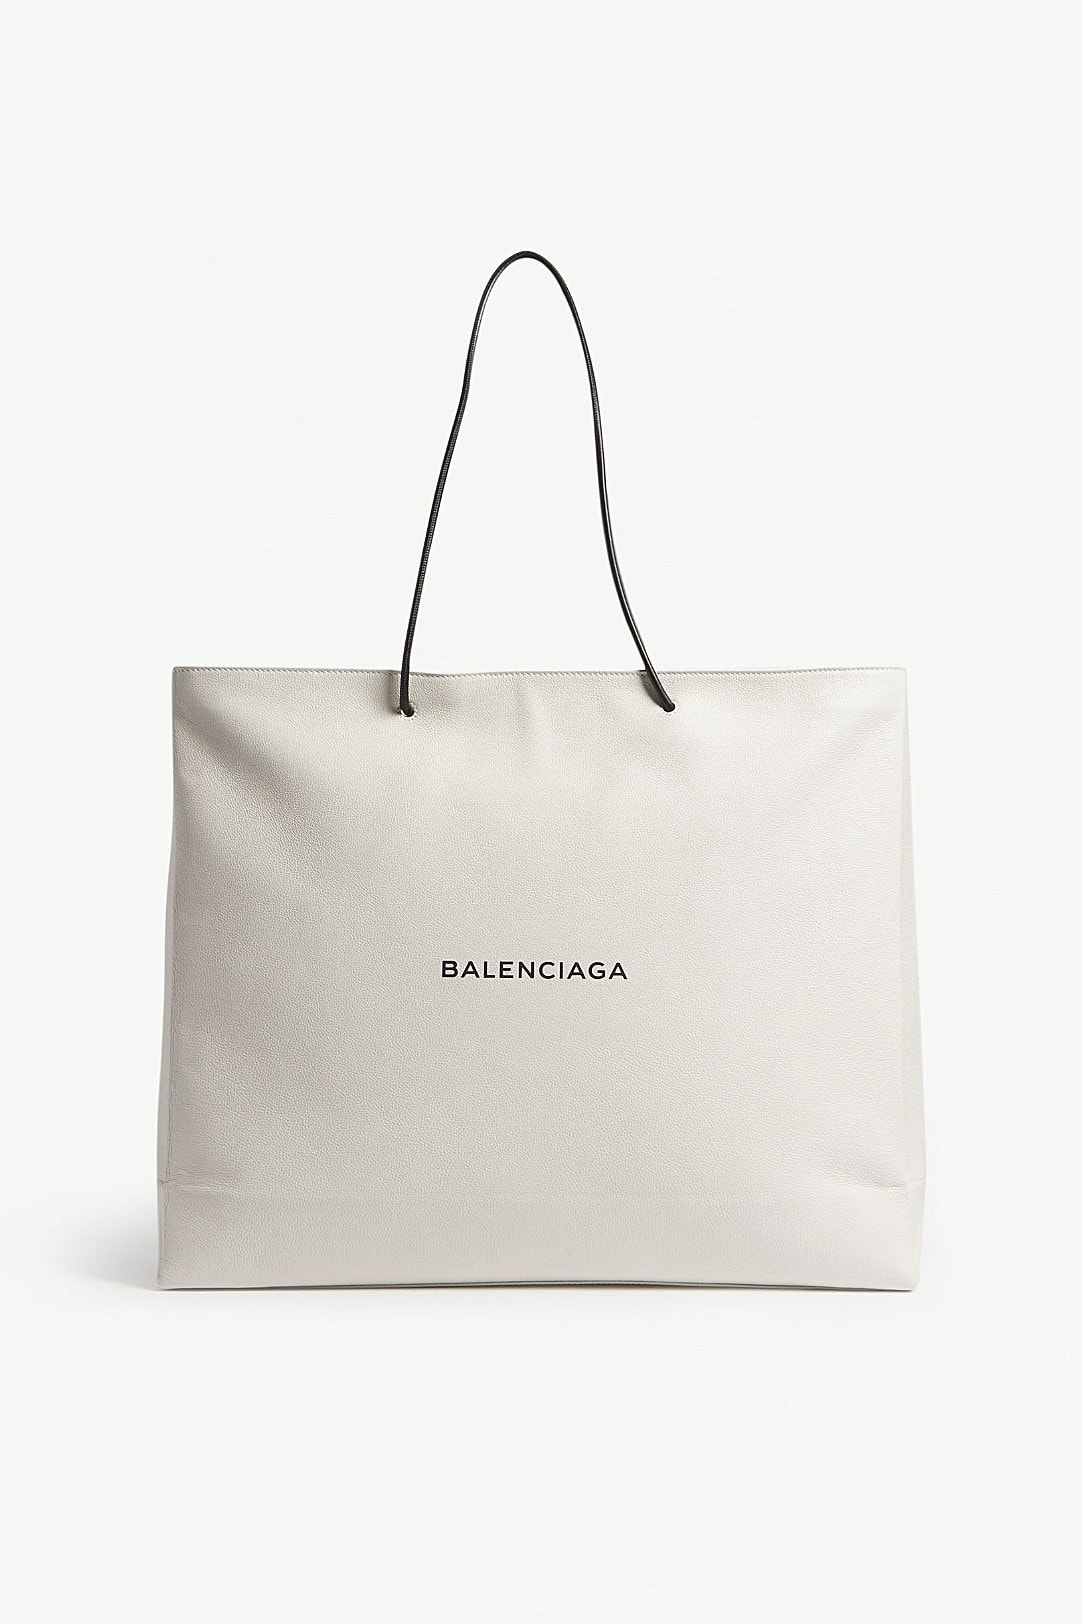 價錢不意外－Balenciaga 最新購物袋售價定為 $2,190 美元